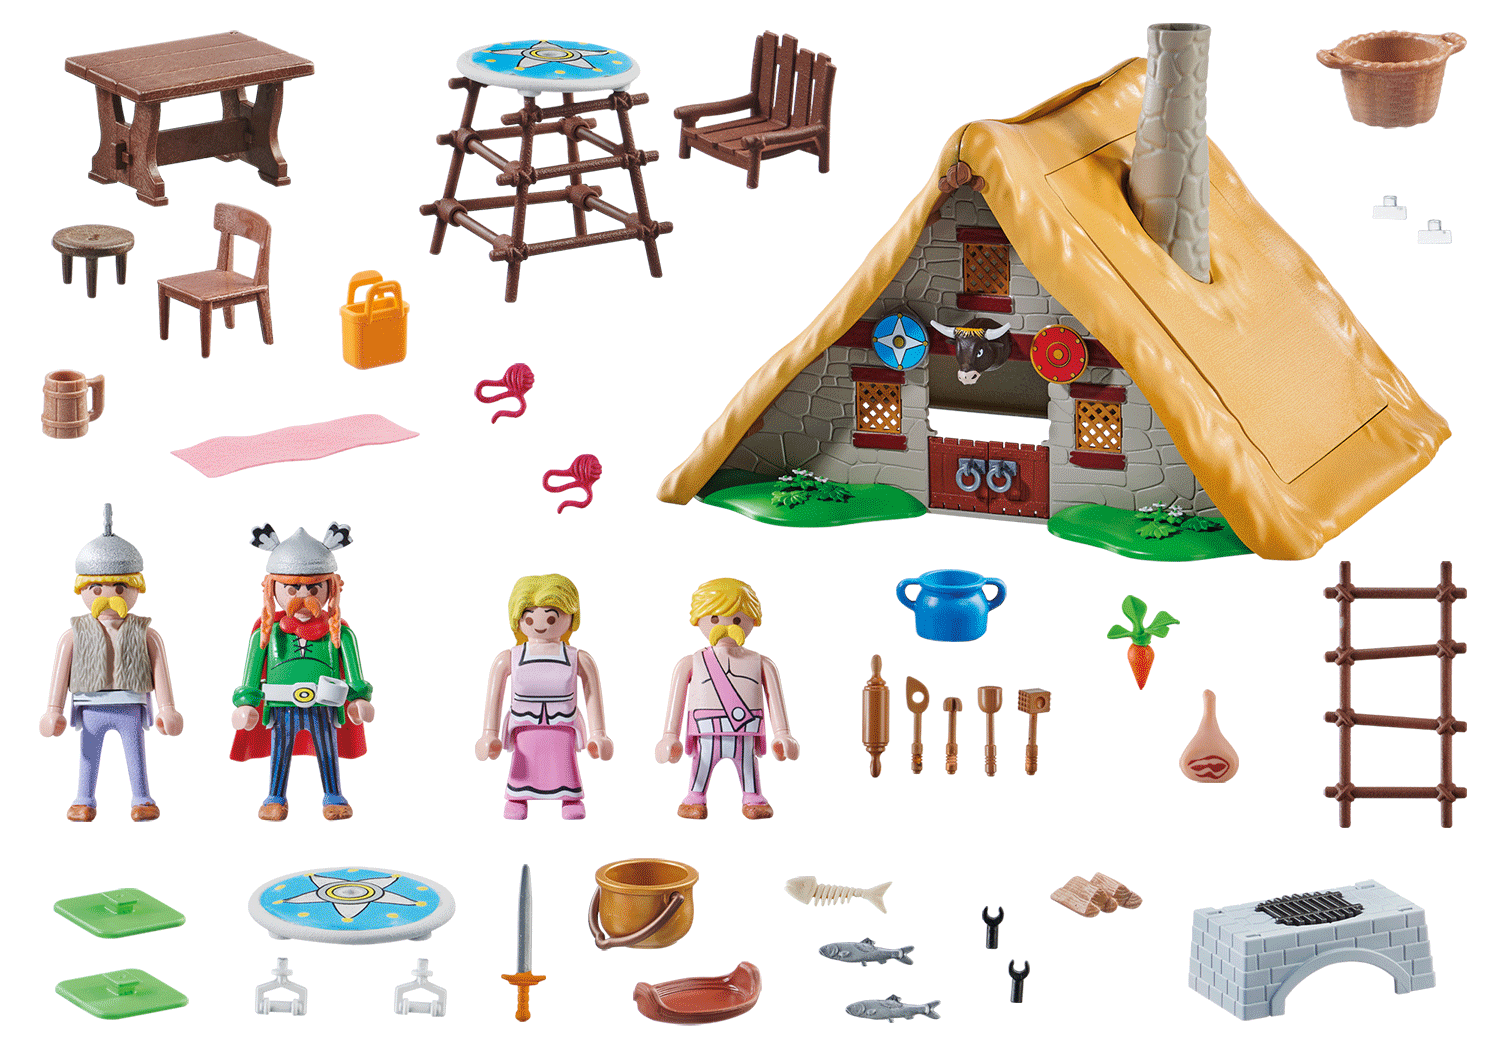 PLAYMOBIL 70932 Asterix: Hütte des Majestix Spielset, Mehrfarbig